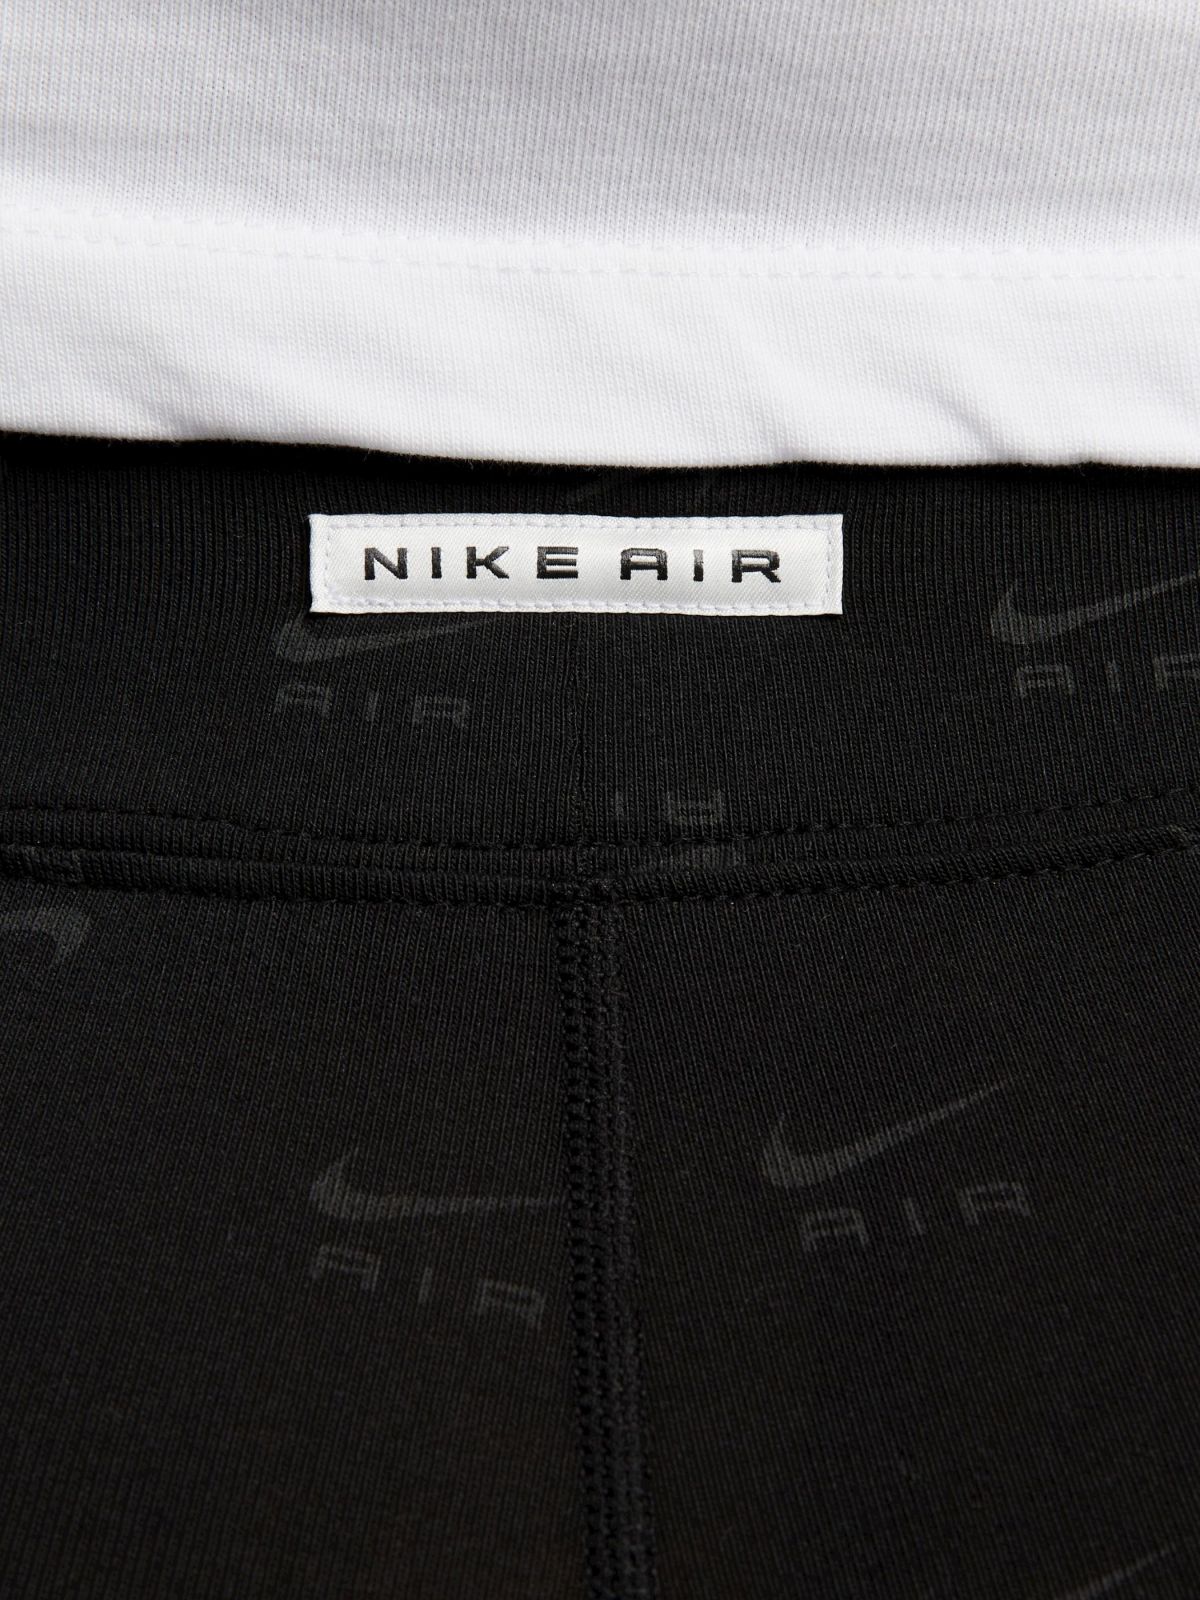  טייץ ארוך בהדפס לוגו Nike Air / Plus Size של NIKE